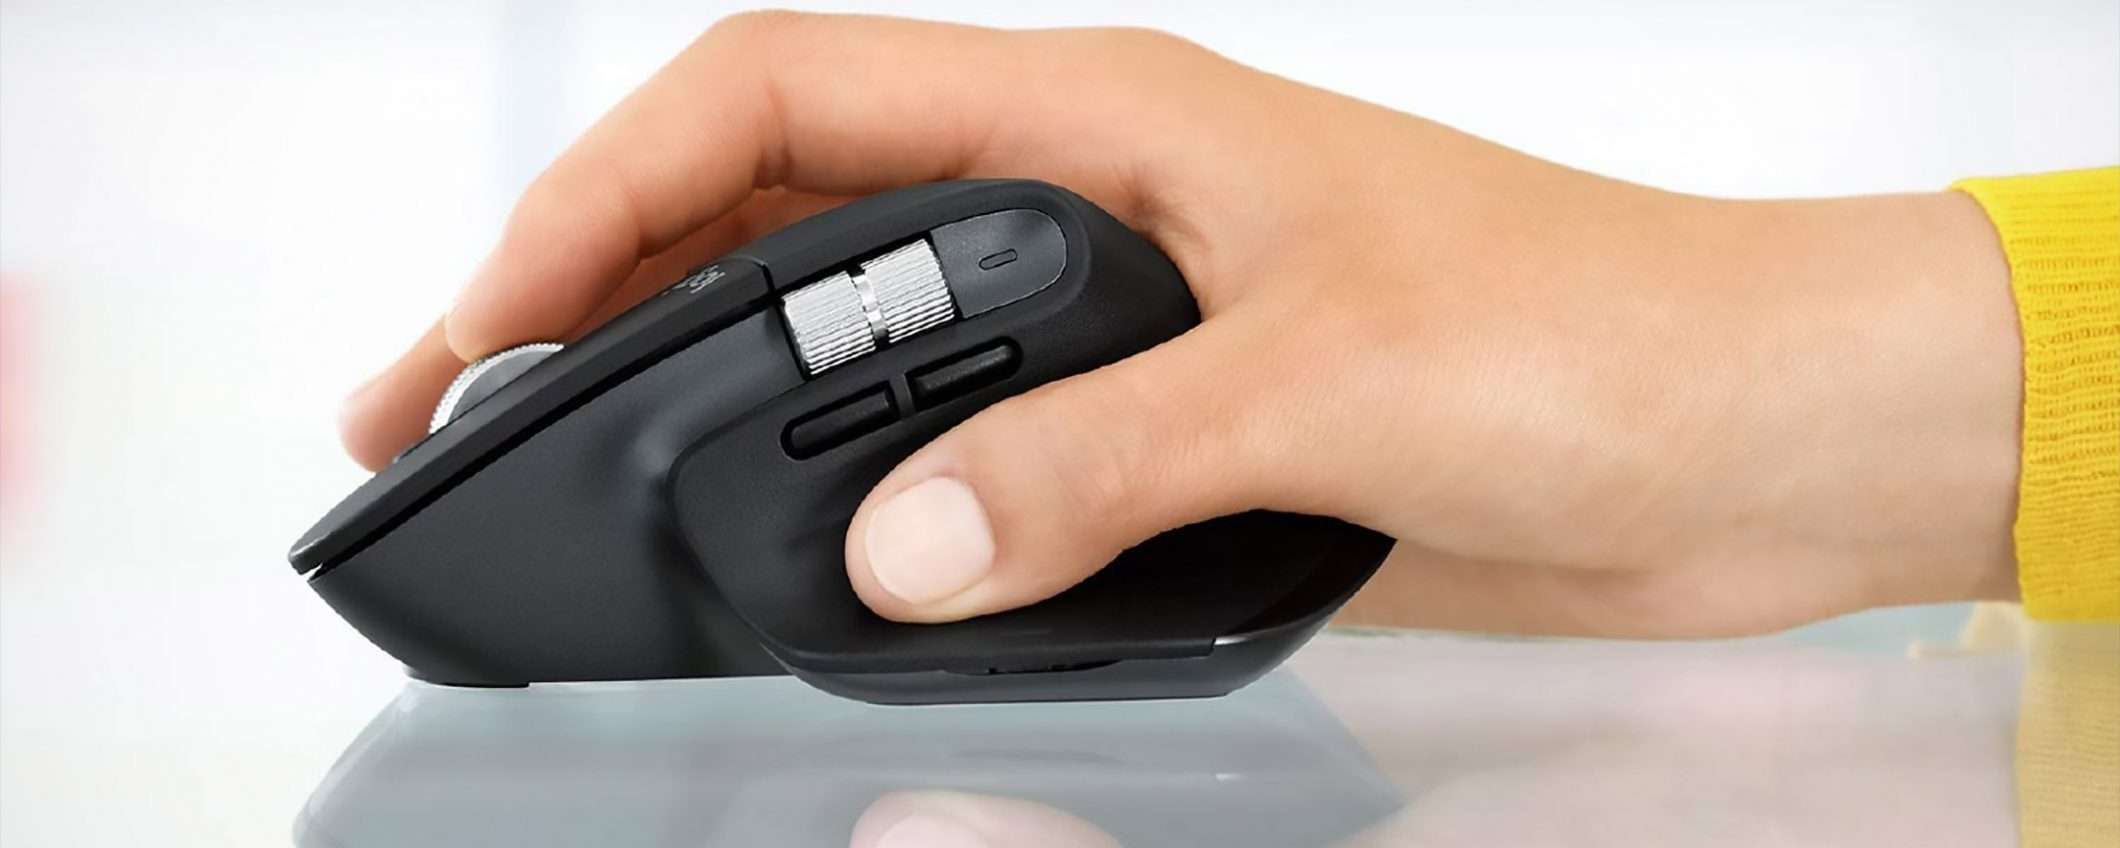 Il mouse Logitech MX Master 3 in sconto su eBay